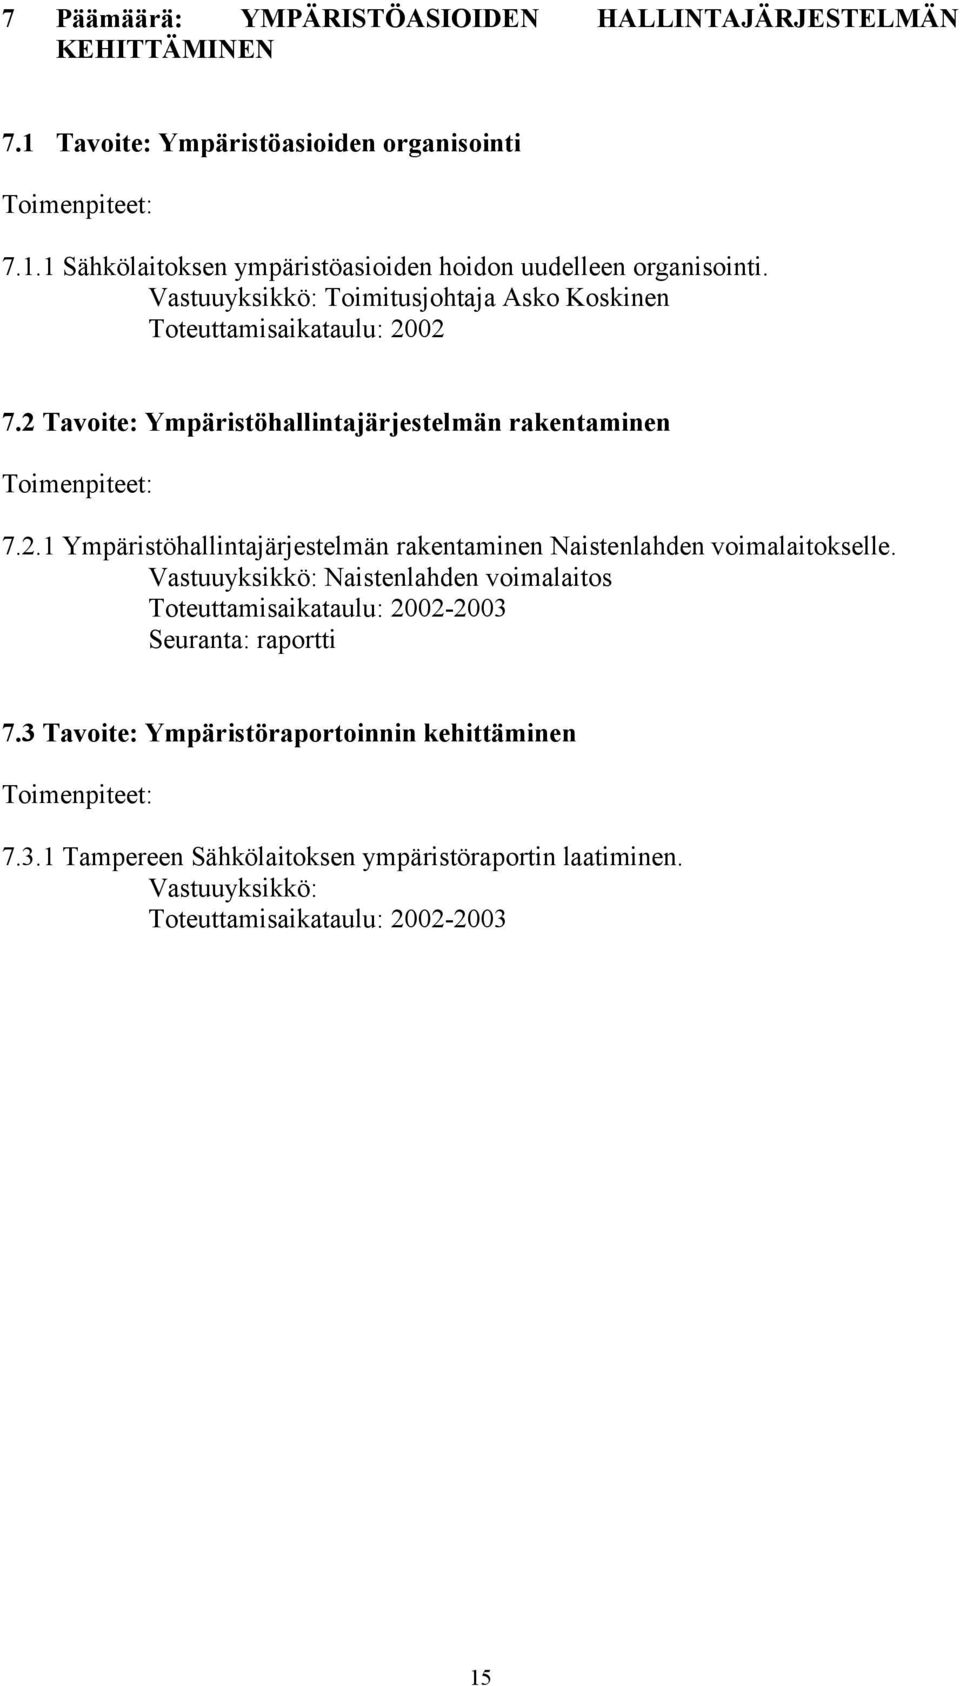 Vastuuyksikkö: Naistenlahden voimalaitos Toteuttamisaikataulu: 2002-2003 7.3 Tavoite: Ympäristöraportoinnin kehittäminen 7.3.1 Tampereen Sähkölaitoksen ympäristöraportin laatiminen.